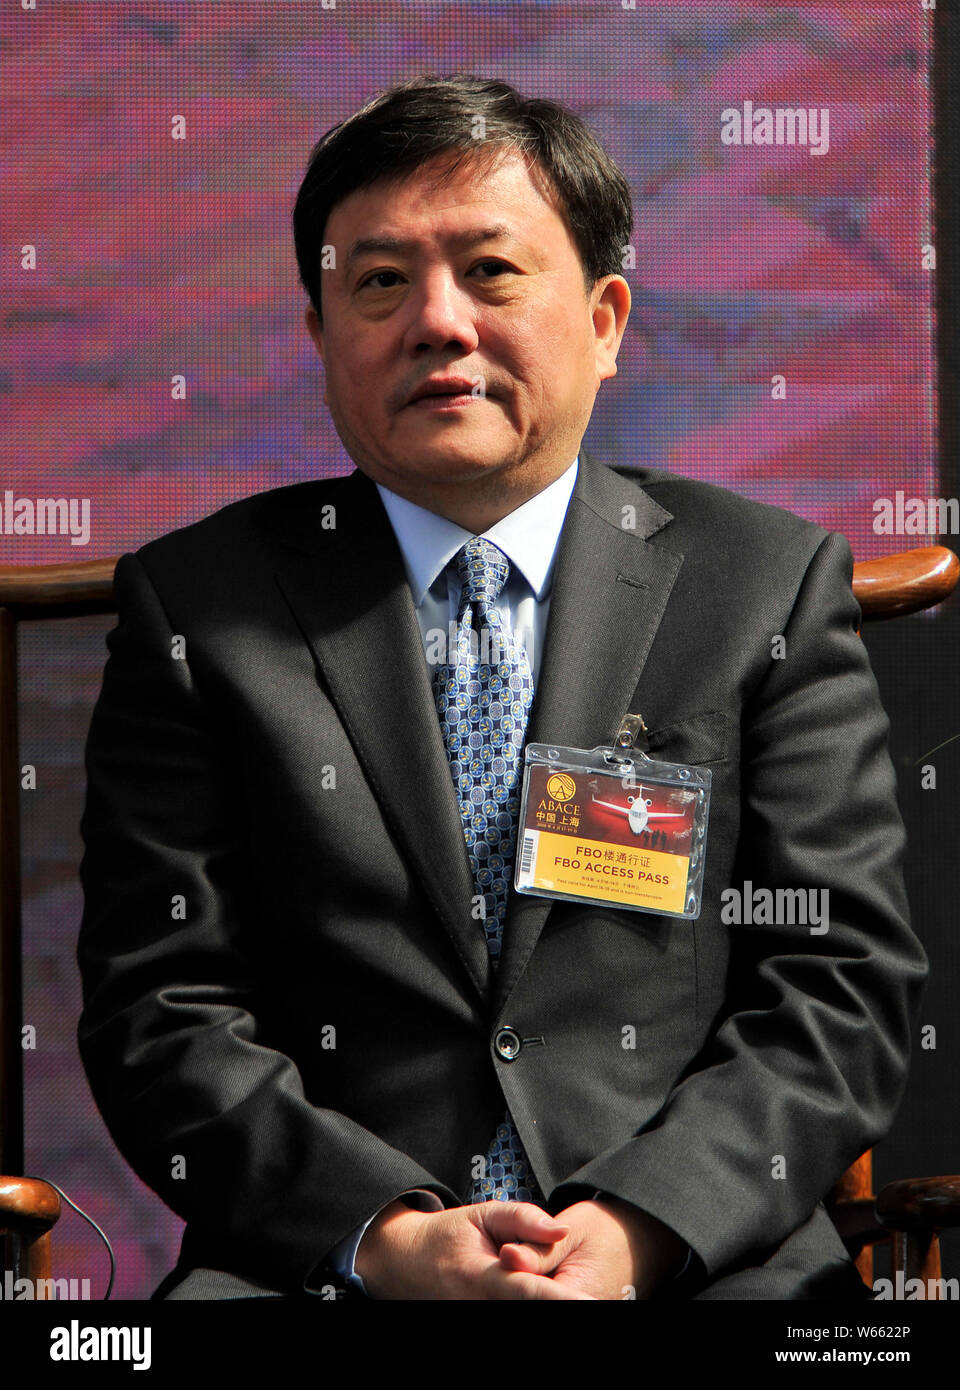 ------ Wu Jianrong, der ehemalige Vorsitzende der Shanghai Airport Authority, nimmt an der Eröffnungsfeier für die 2018 Asian Business Aviation Conference & Stockfoto